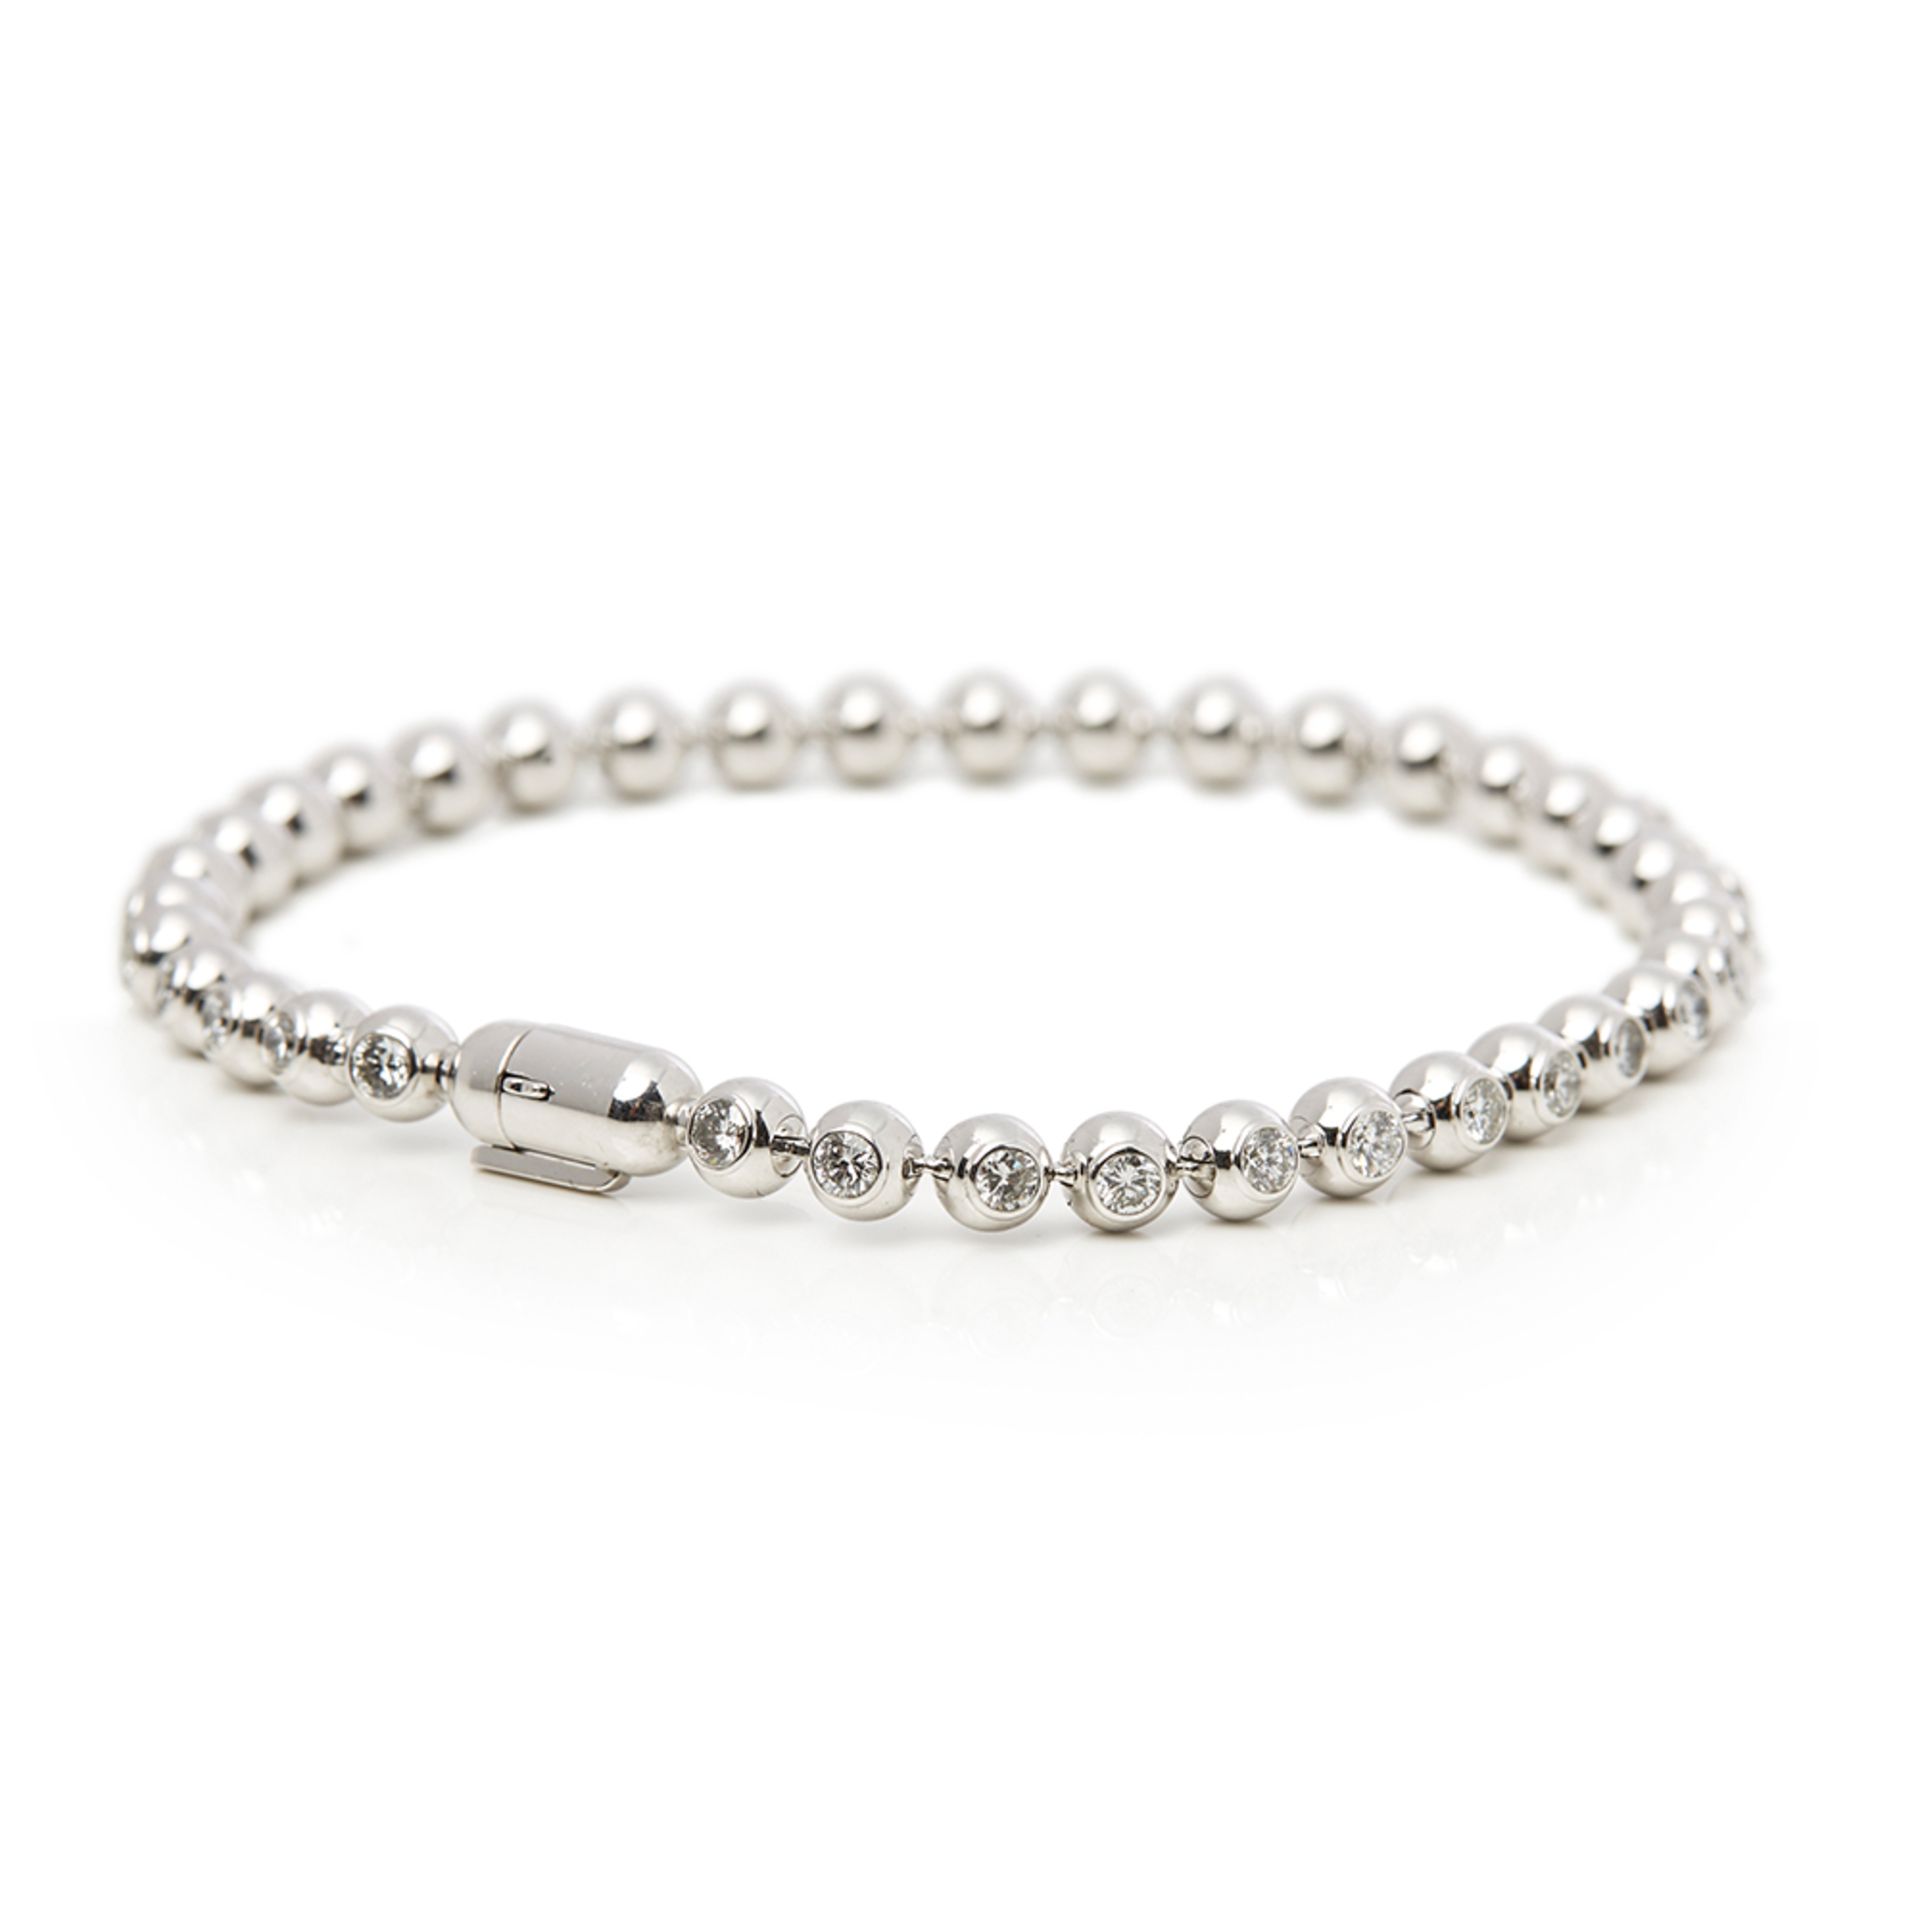 Cartier 18k White Gold Perles de Diamants Bracelet - Image 2 of 8